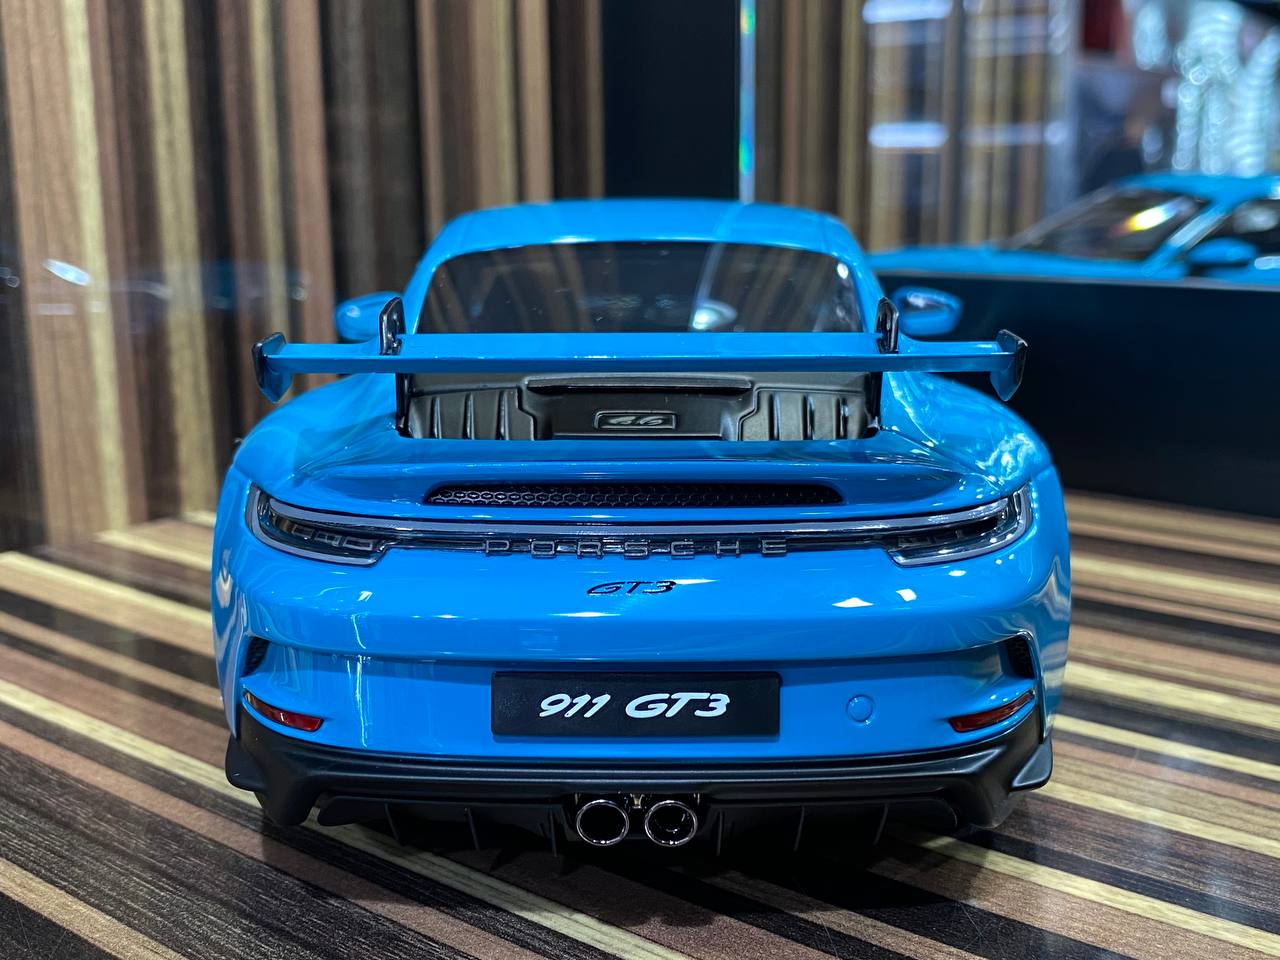 1/18 Diecast Porsche 911 GT3 Blue Norev Scale Model Car